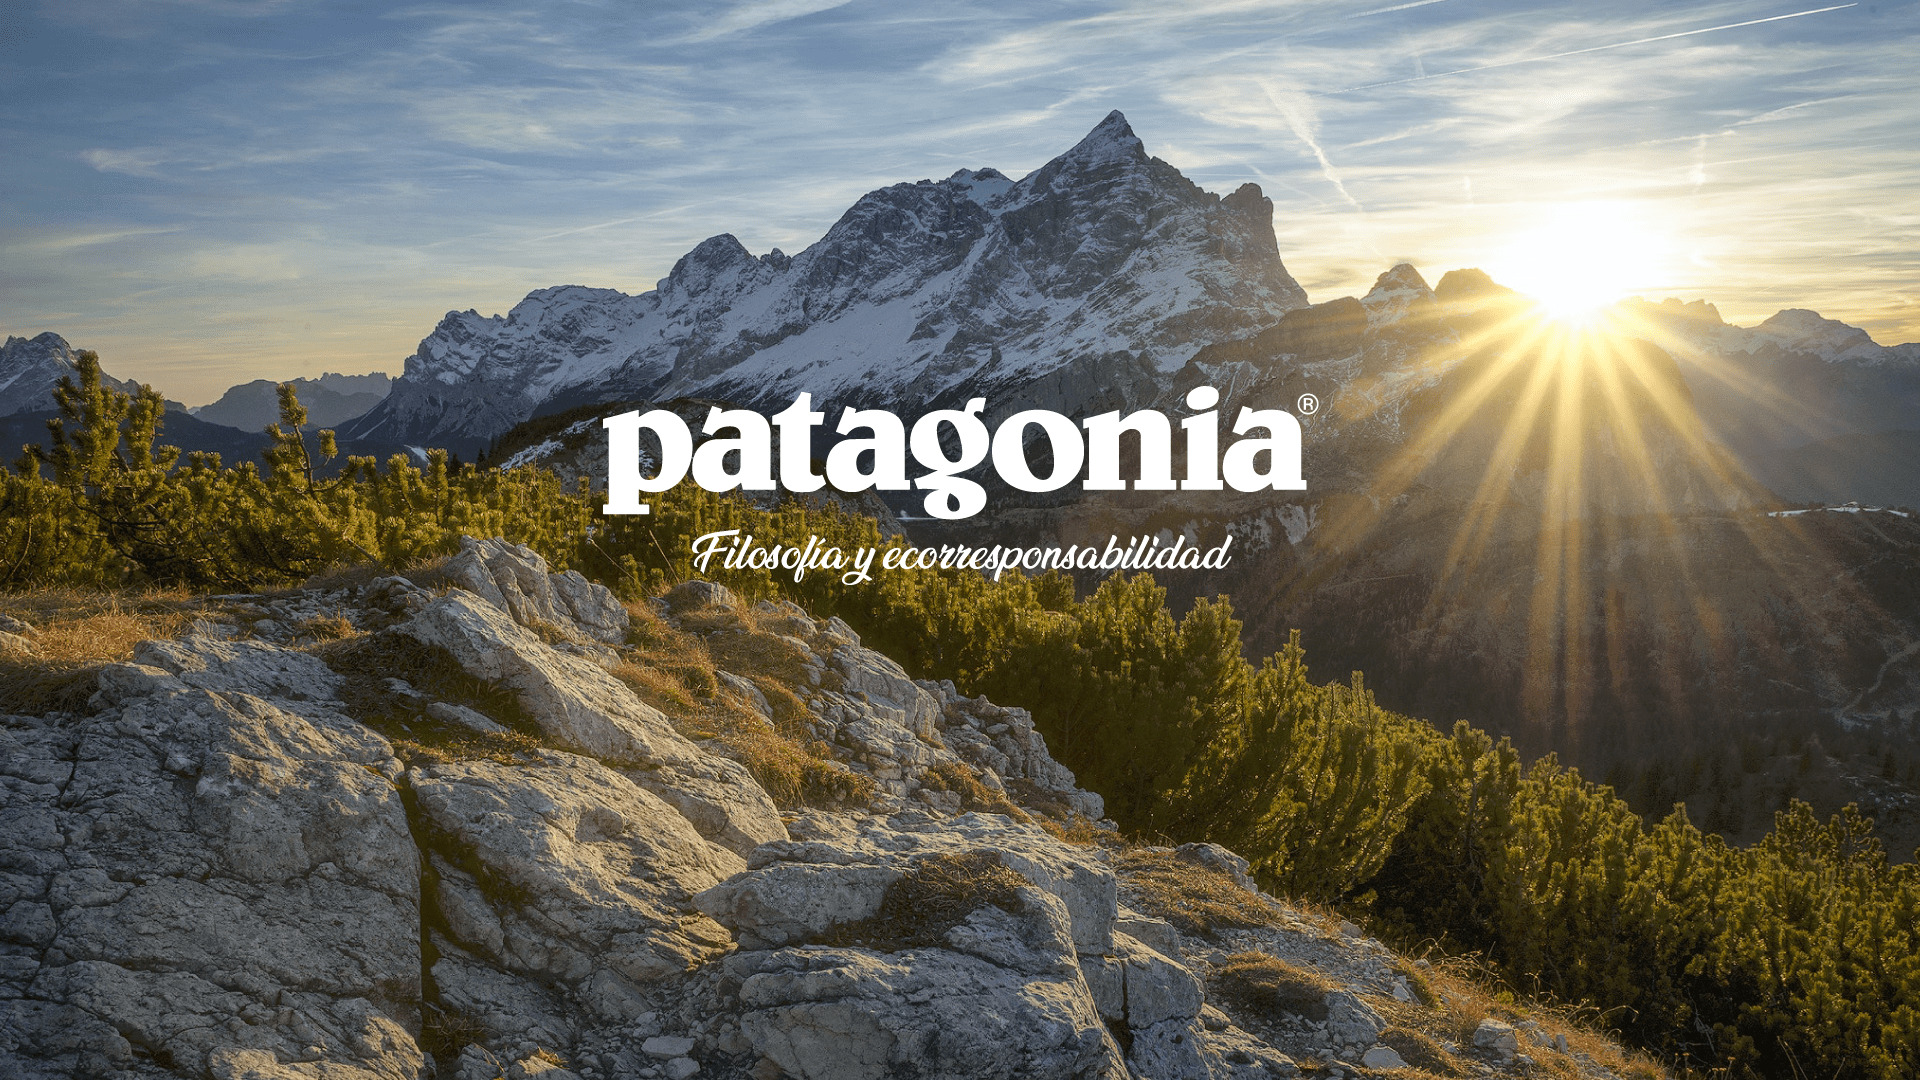 Paquete o empaquetar pestaña Vagabundo Patagonia: La marca de ropa outdoor con filosofía y ecorresponsabilidad